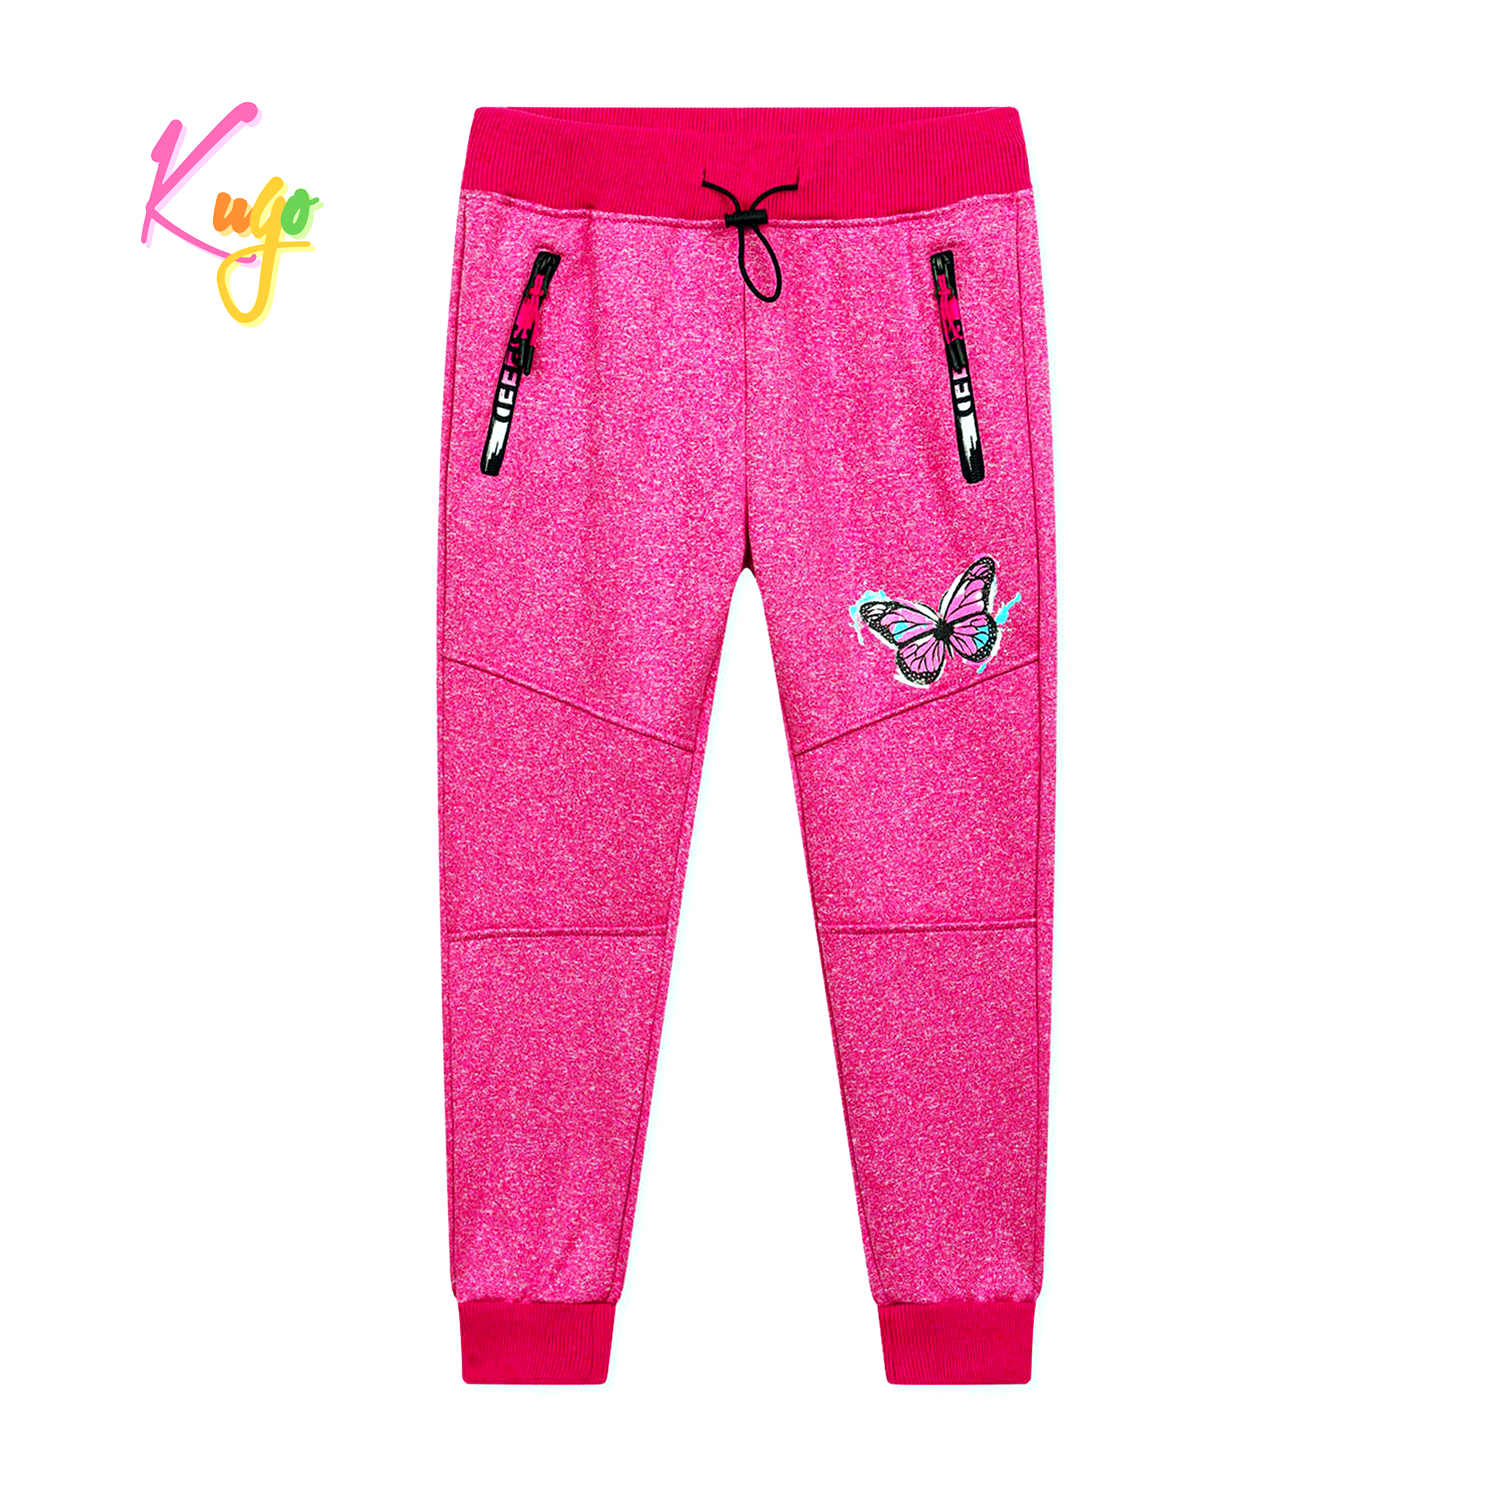 Dívčí softshellové tepláky - KUGO GK8635, růžová Barva: Růžová, Velikost: 116